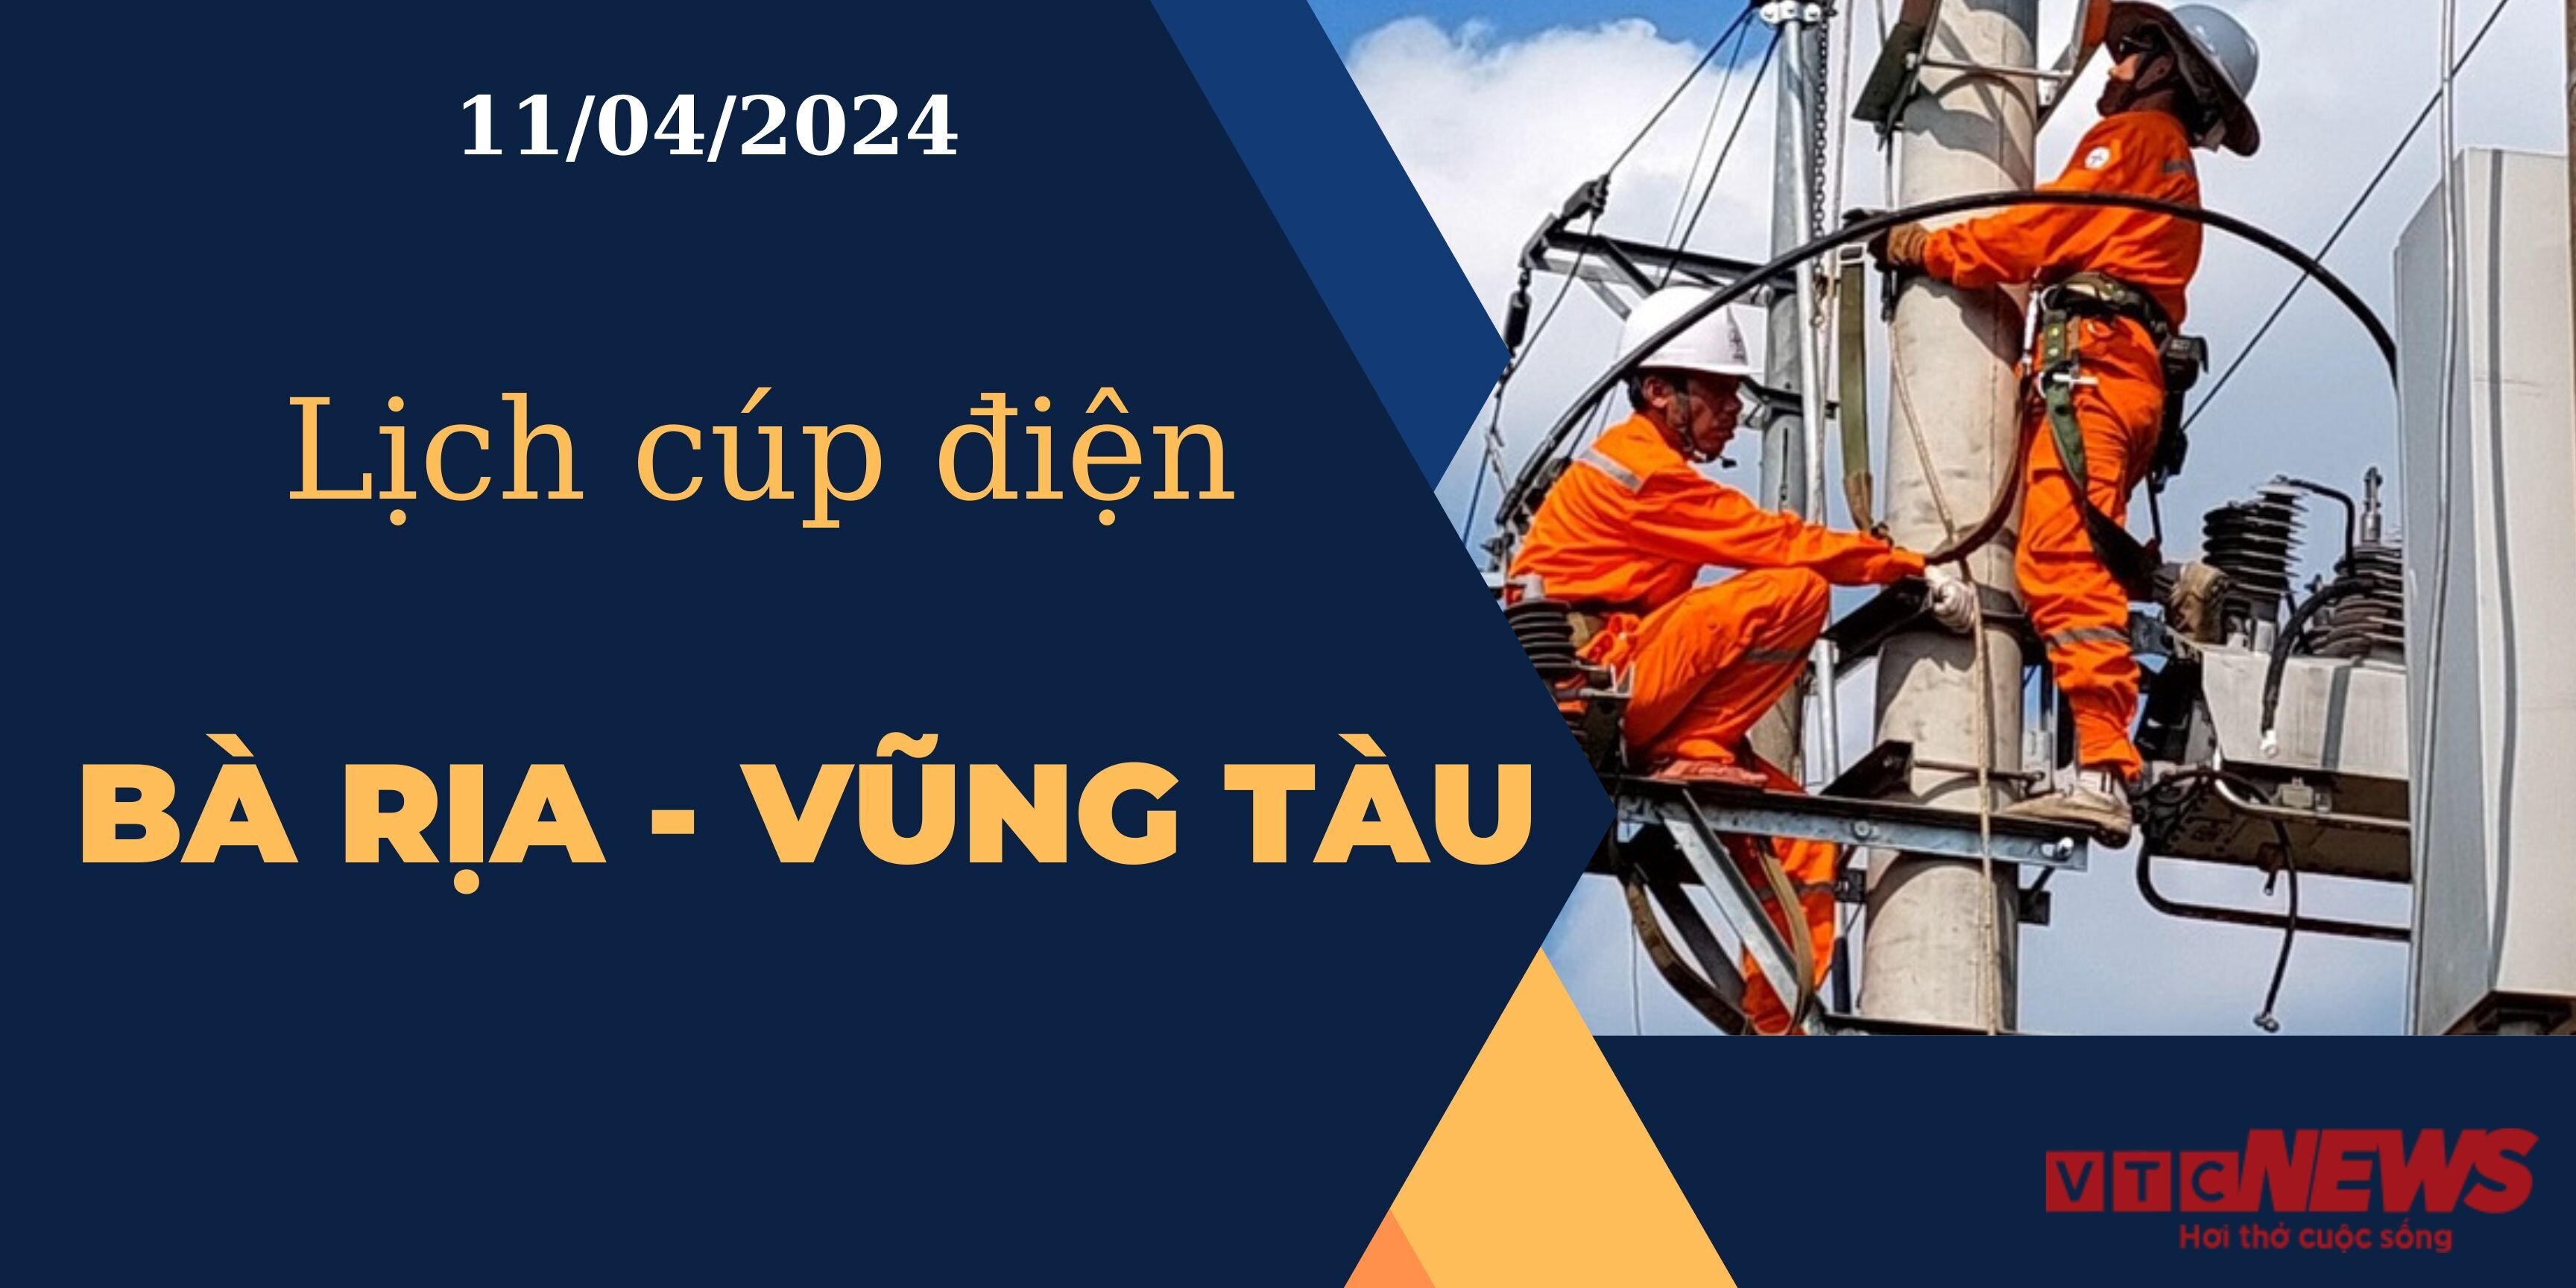 Lịch cúp điện hôm nay ngày 11/04/2024 tại Bà Rịa - Vũng Tàu